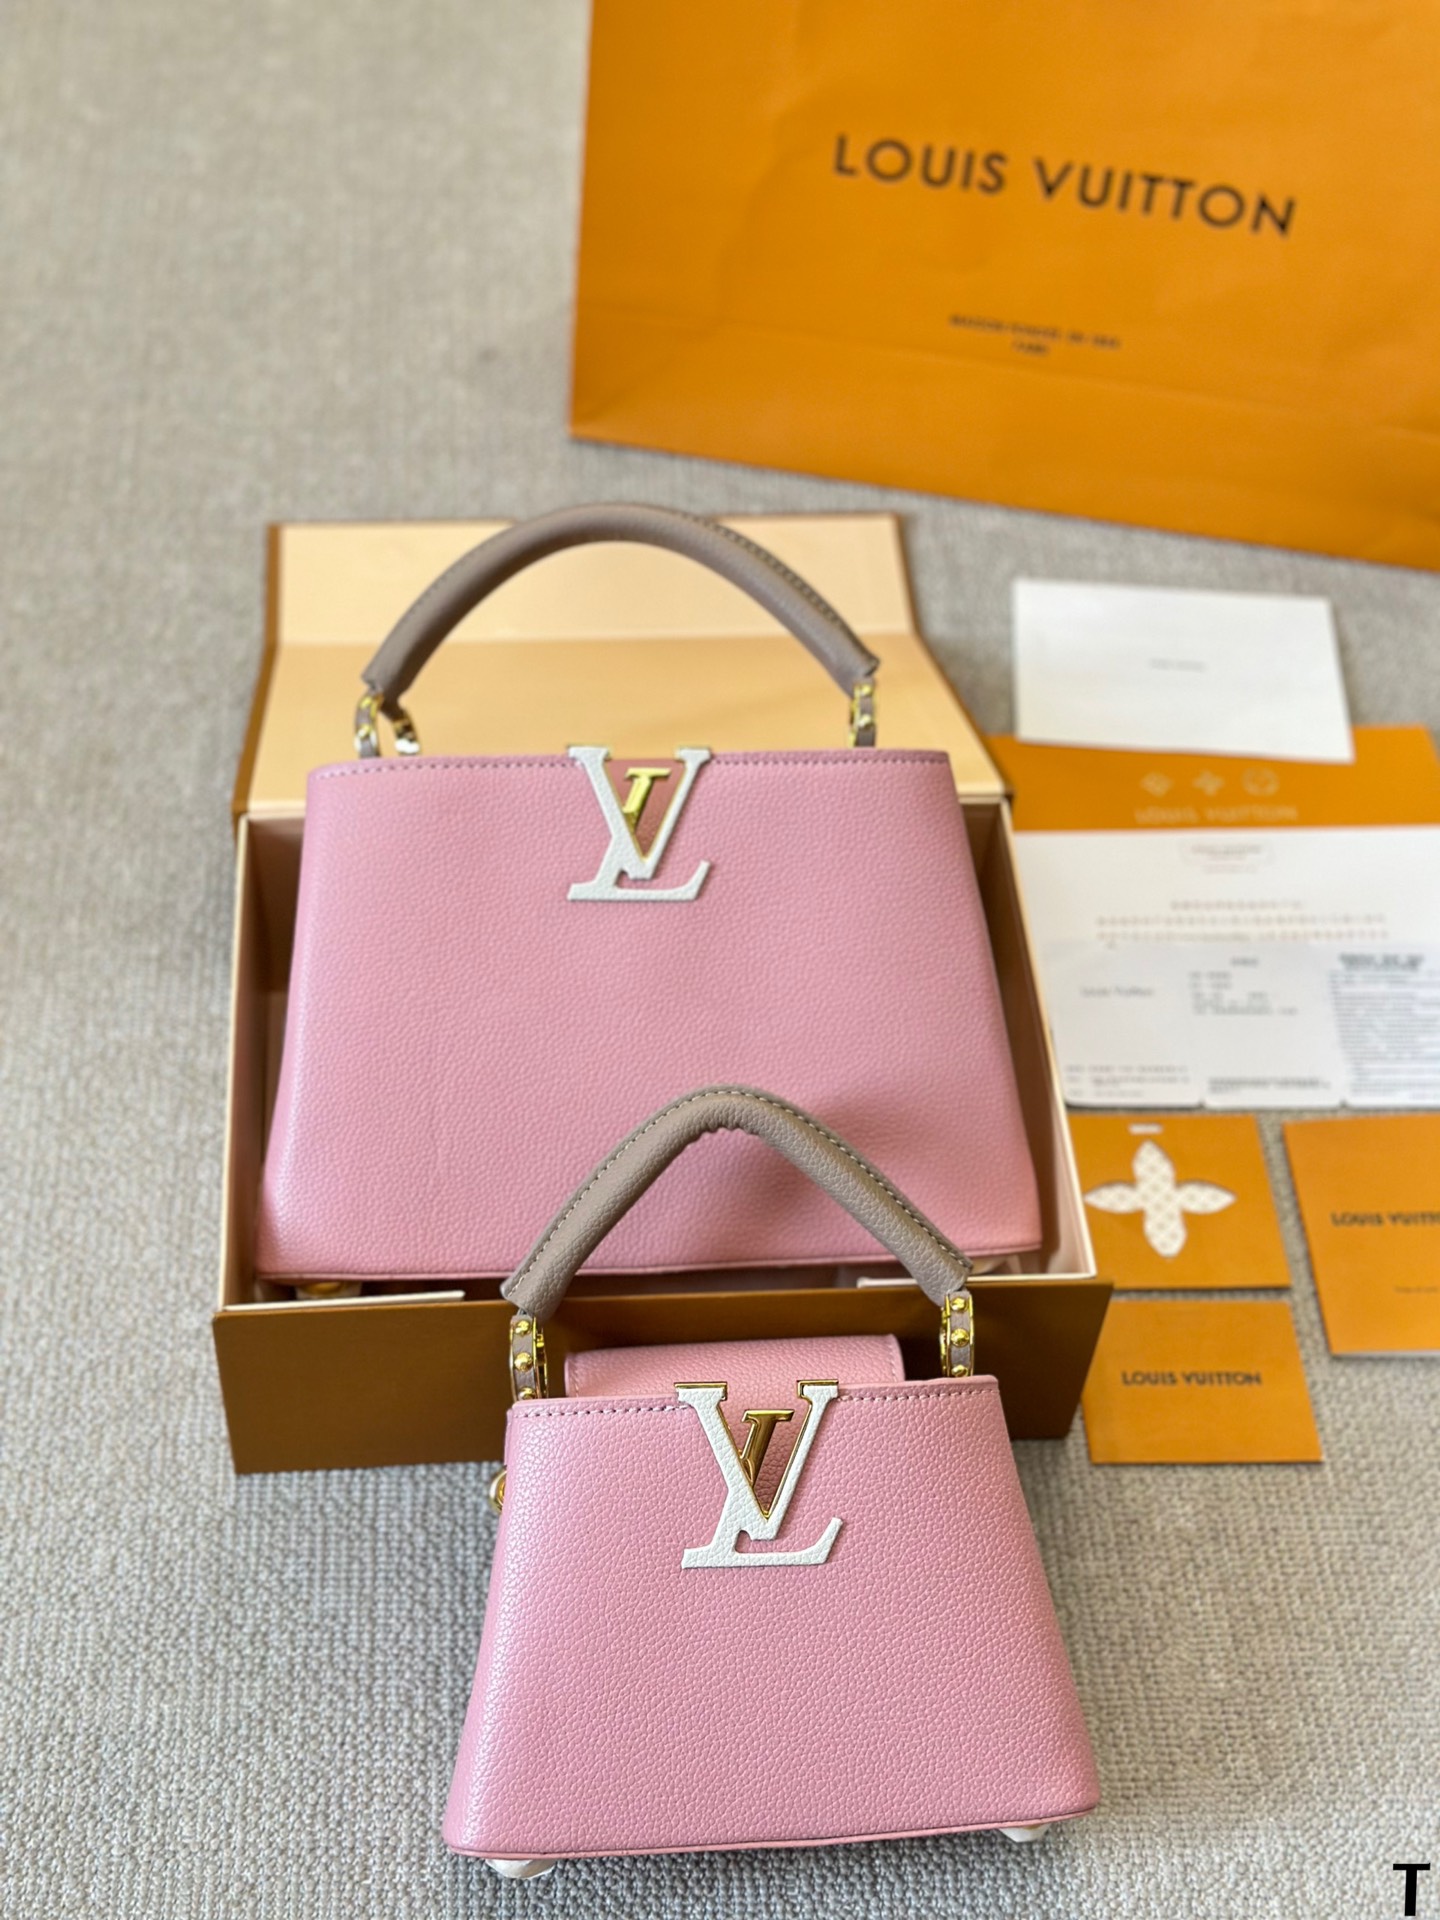 Louis Vuitton LV Capucines Taschen Handtaschen Replik in der besten Qualität
 Weiß Rindsleder